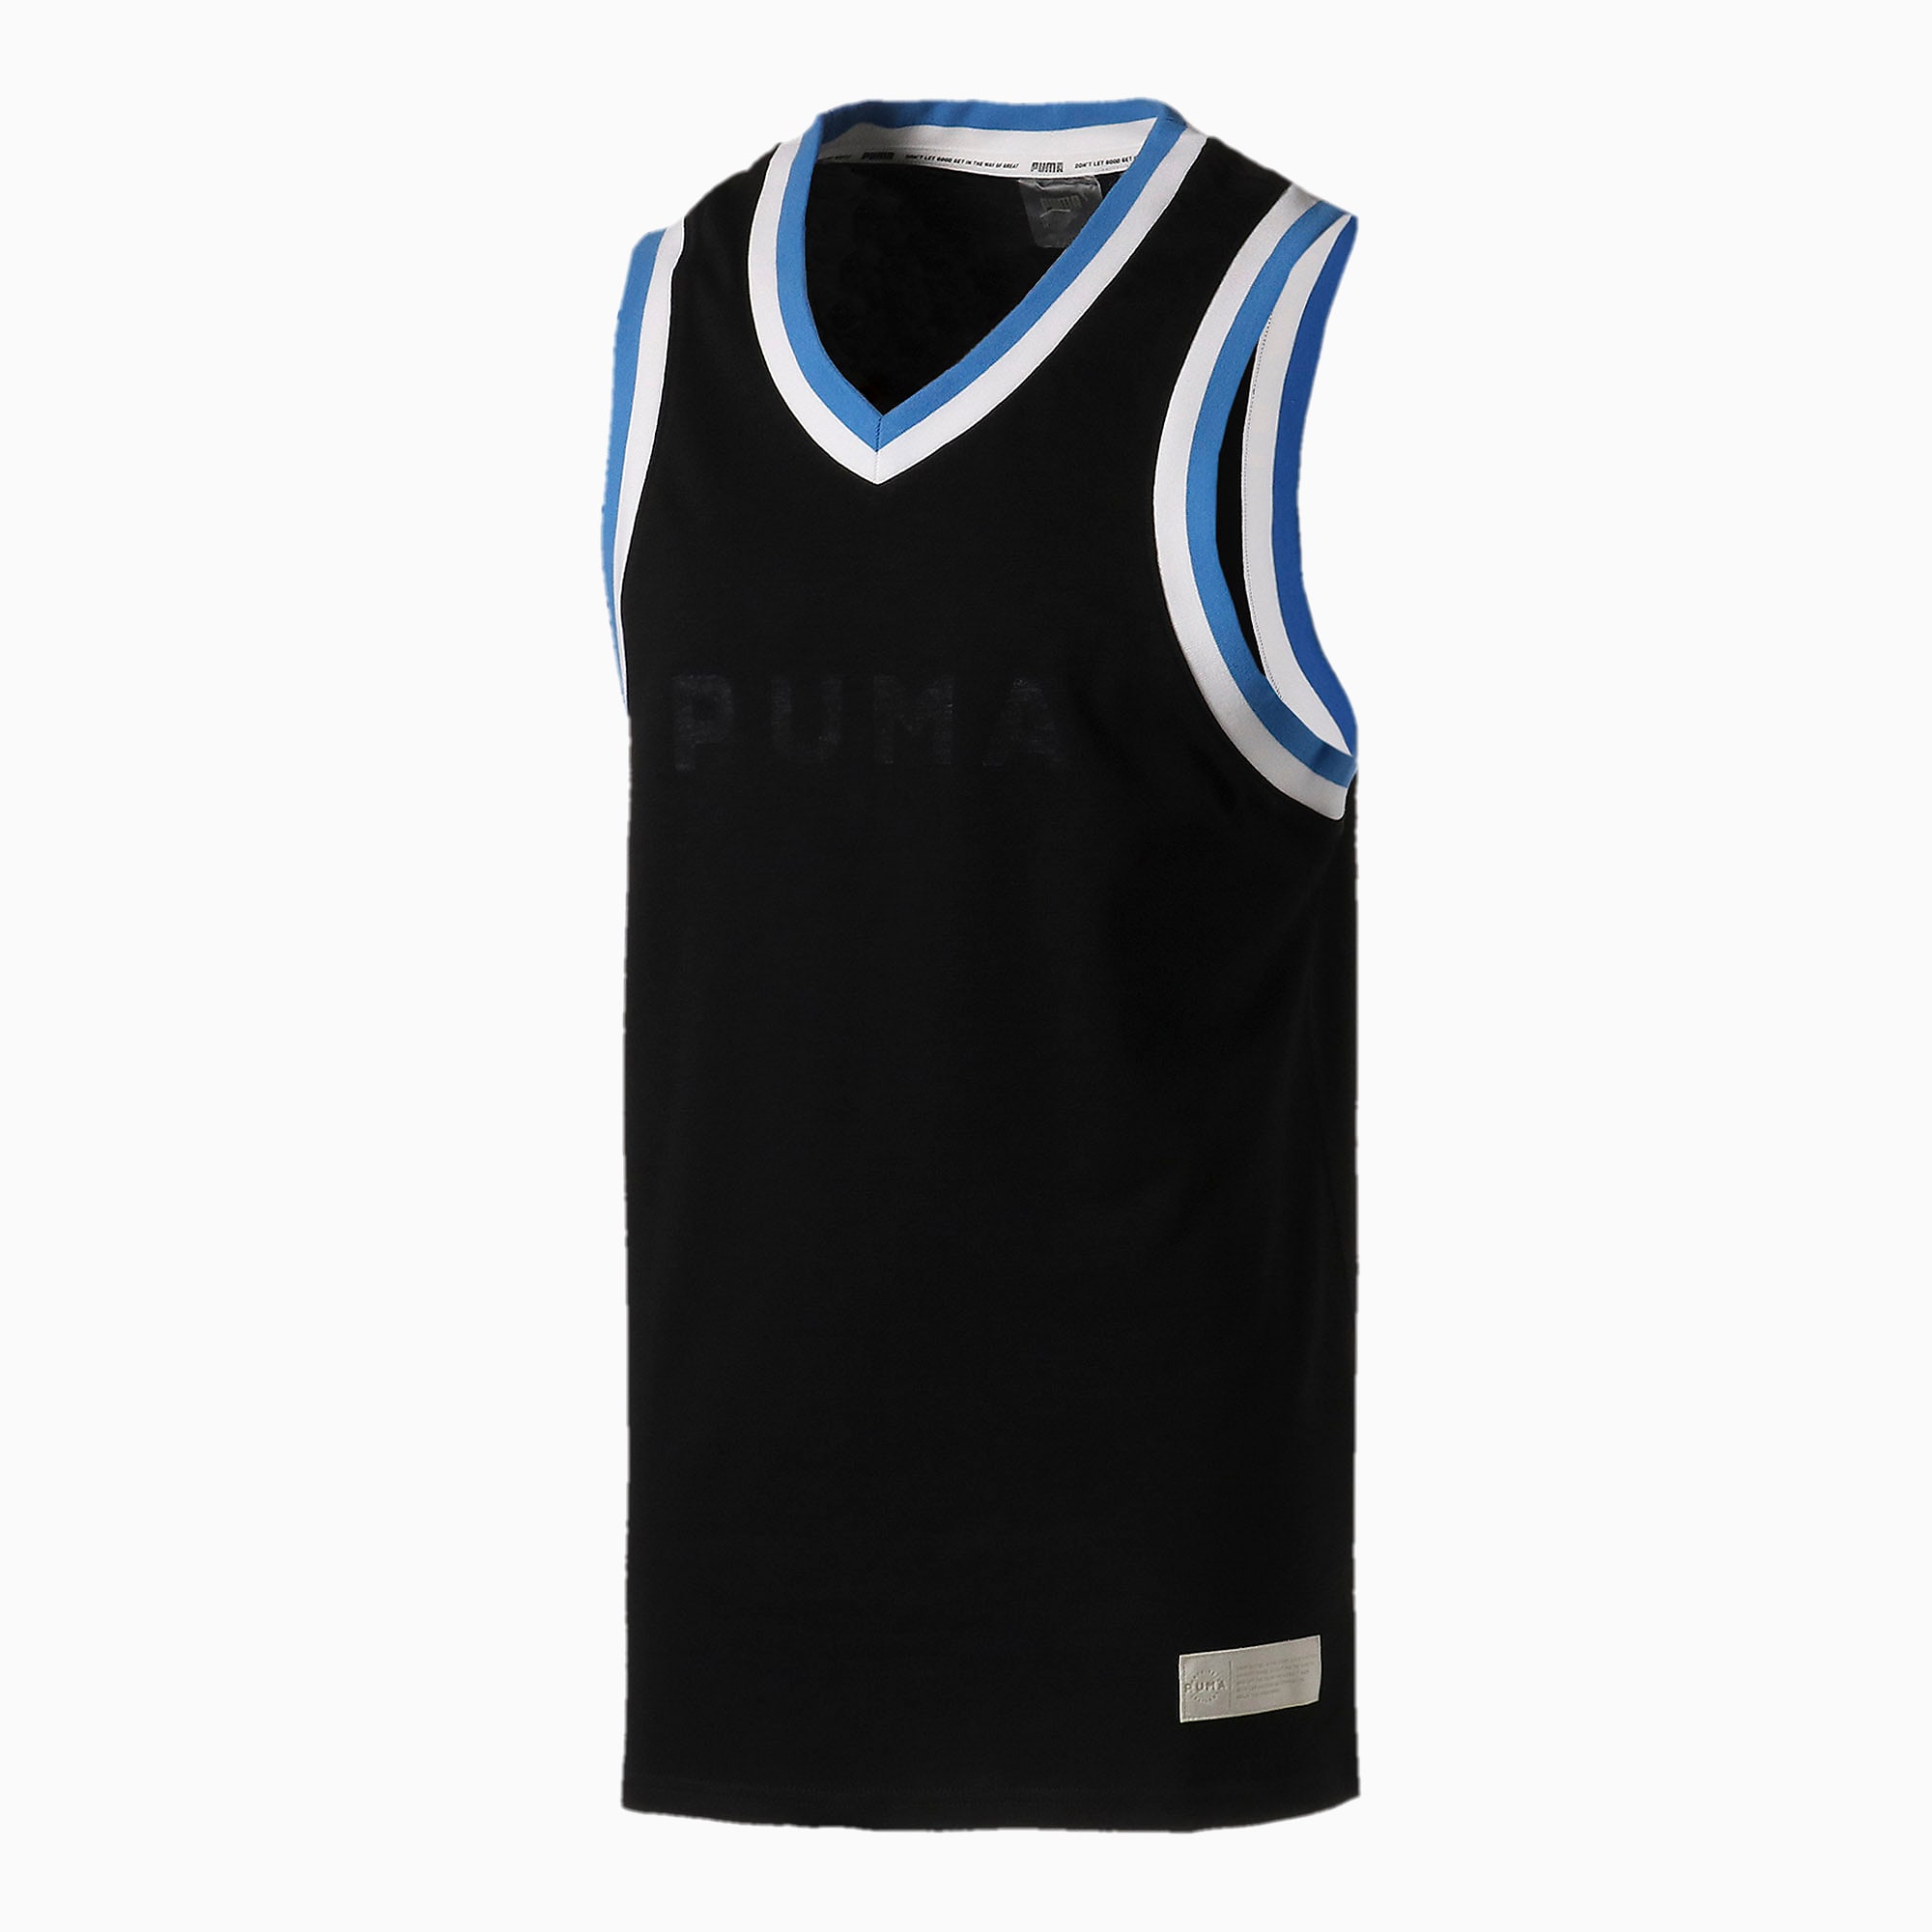 puma basketball uniforms